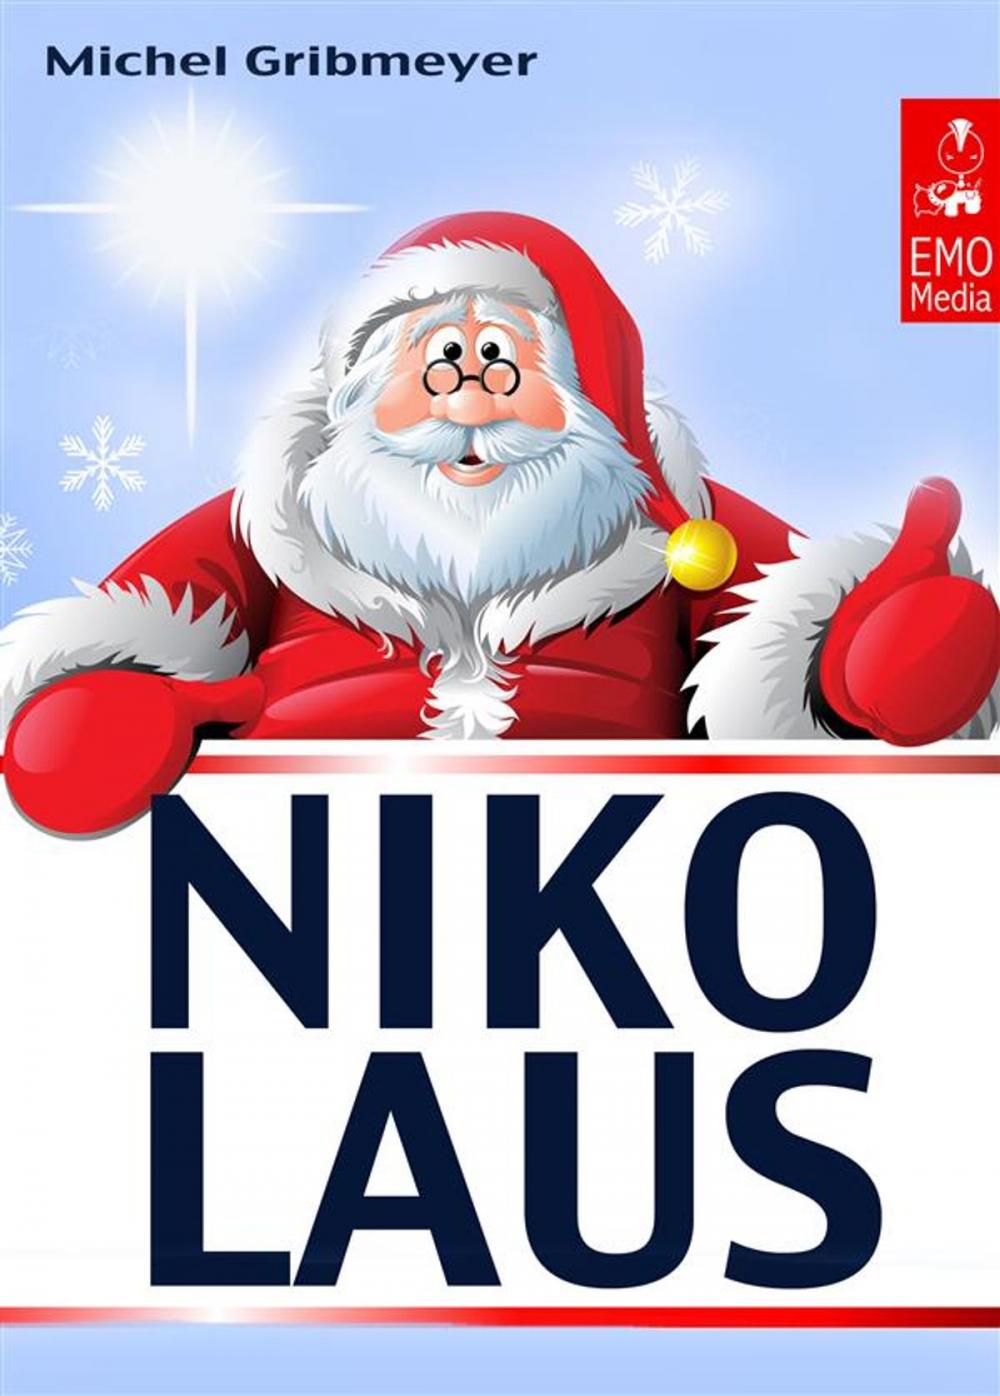 Big bigCover of Nikolaus - Alles für einen schönen Nikolaus-Tag: Süße Grüße, interessante Fakten und das beliebte Nikolaus-Lied (Illustrierte Ausgabe)